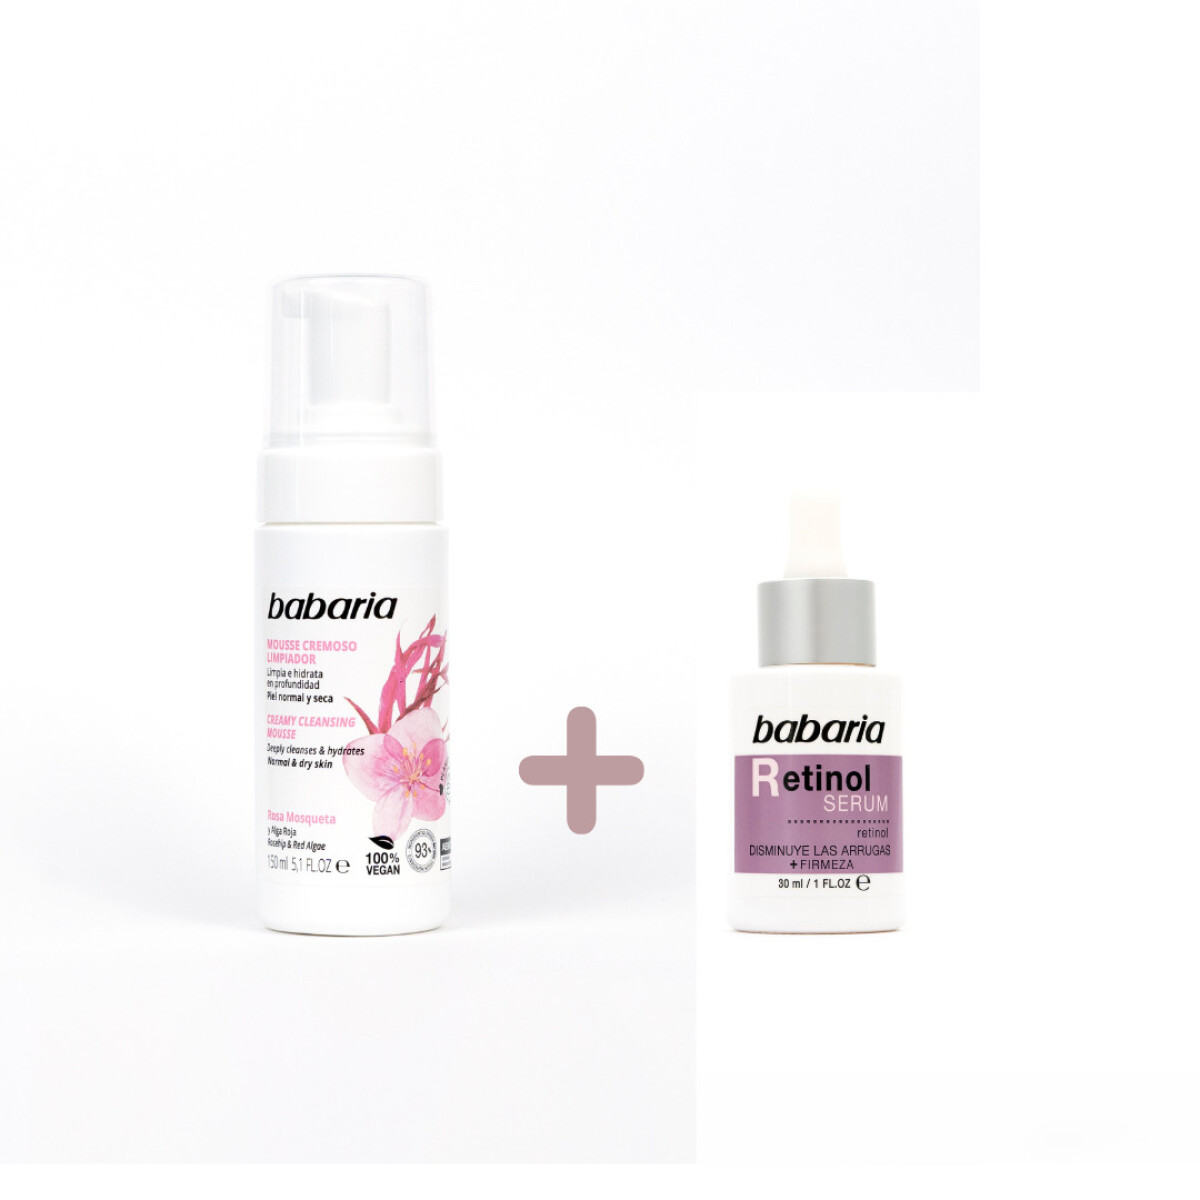 Rutina básica de skincare - Mousse limpiador + serum - Retinol 